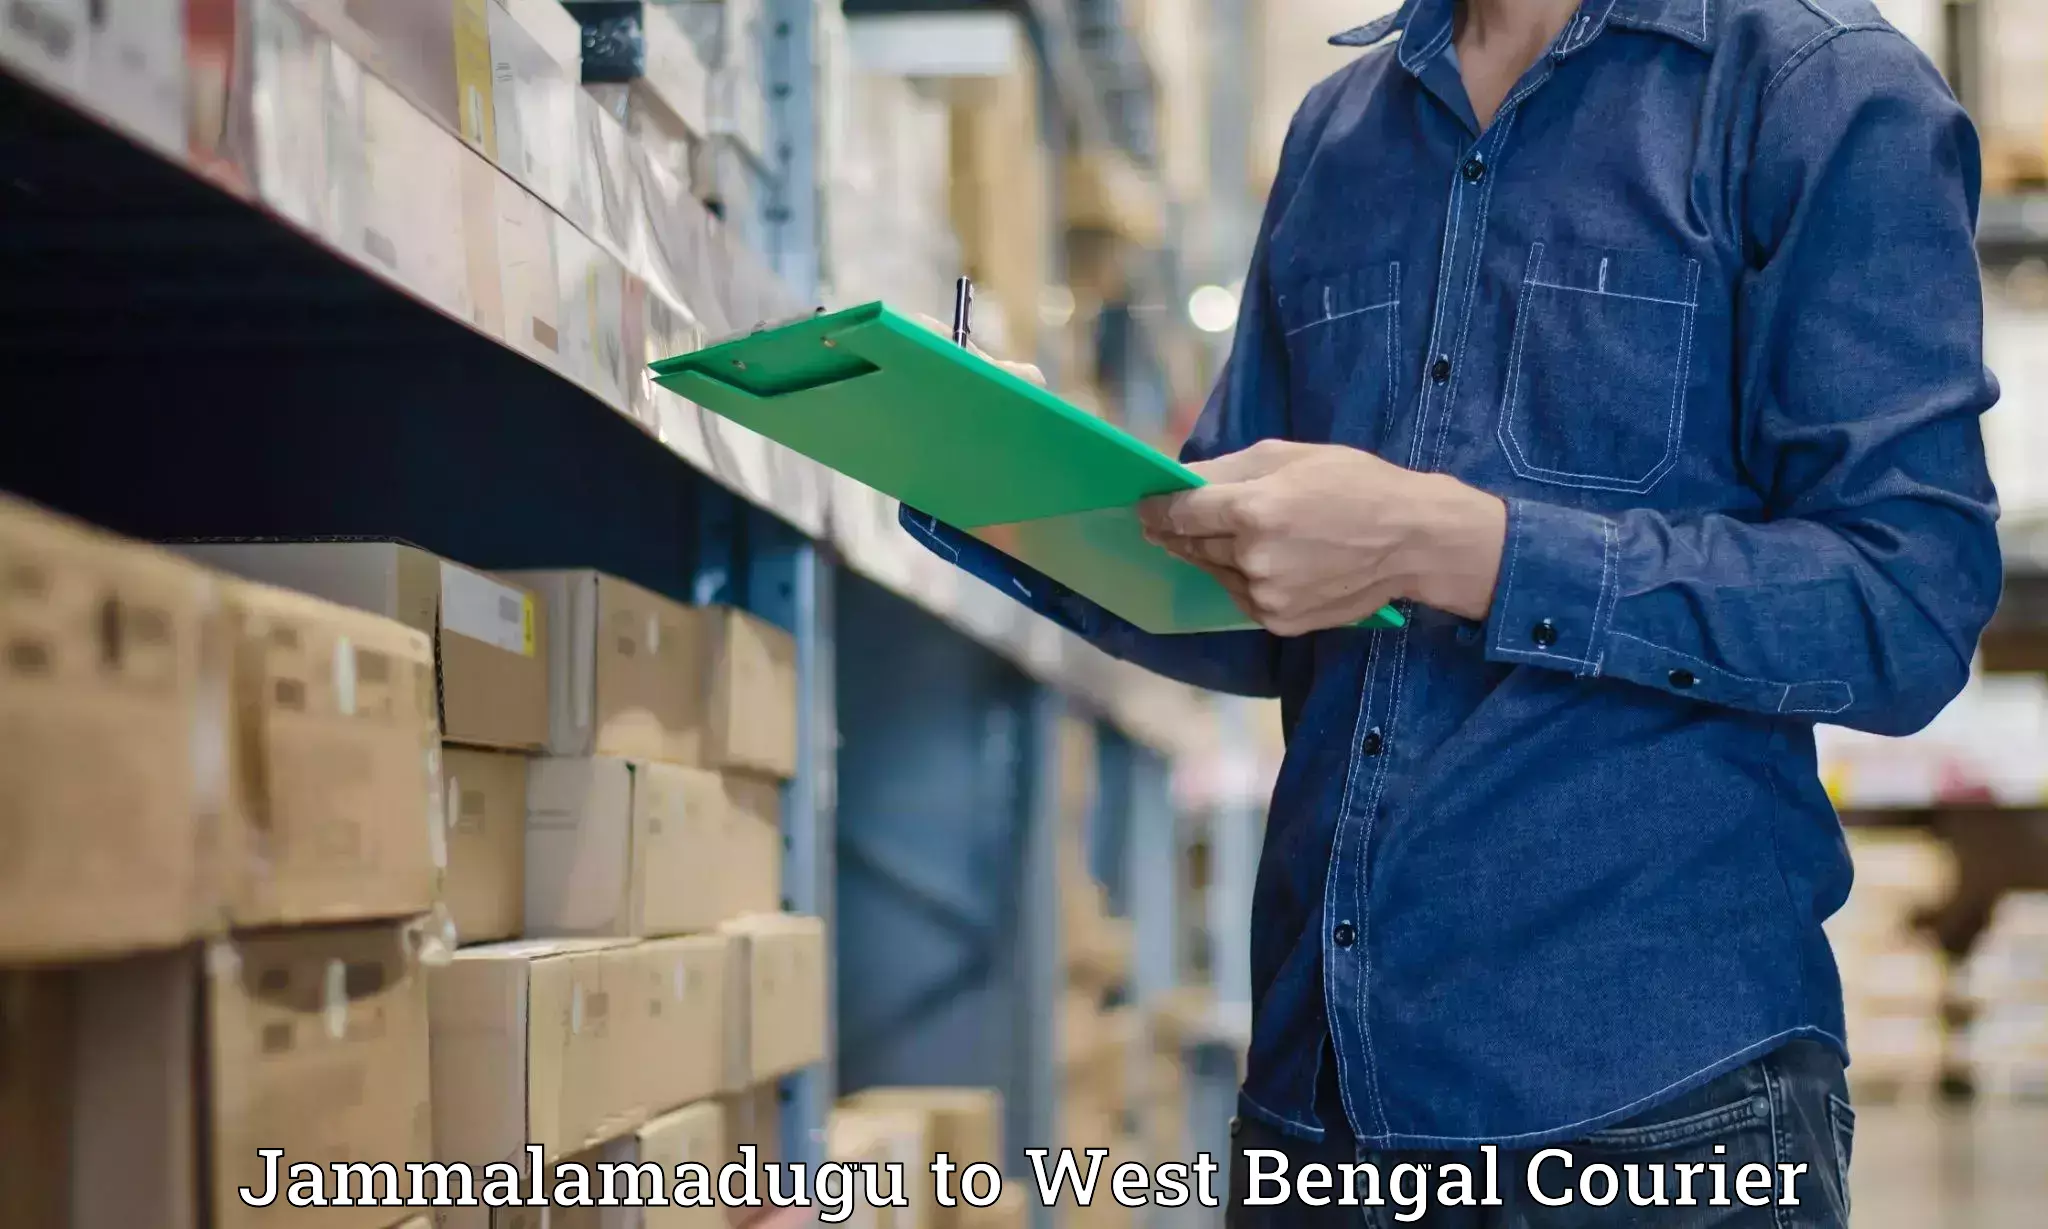 Advanced courier platforms Jammalamadugu to West Bengal